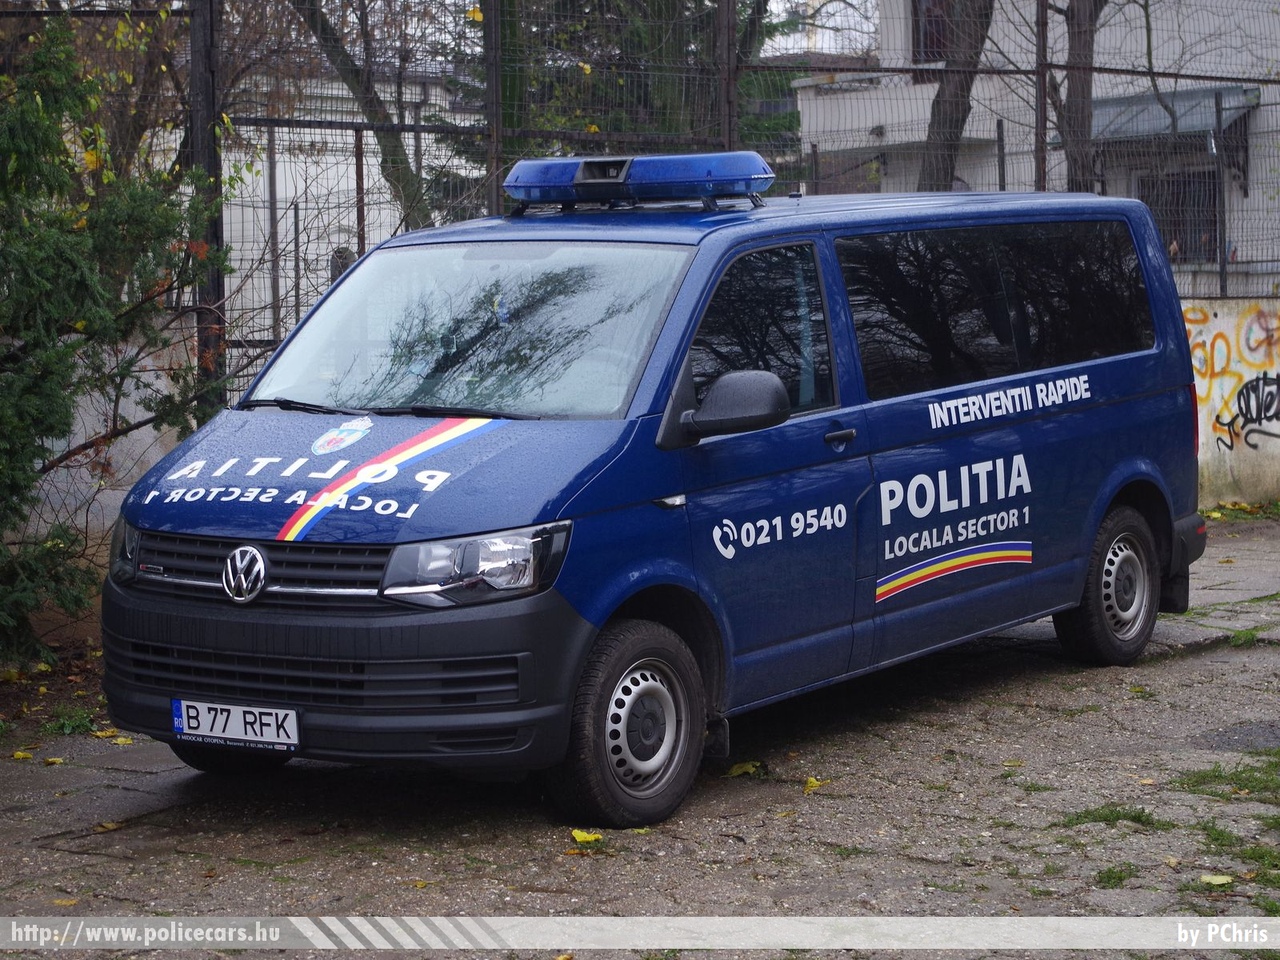 Volkswagen Transporter T6, fotó: PChris
Keywords: román Románia rendőr rendőrautó rendőrség